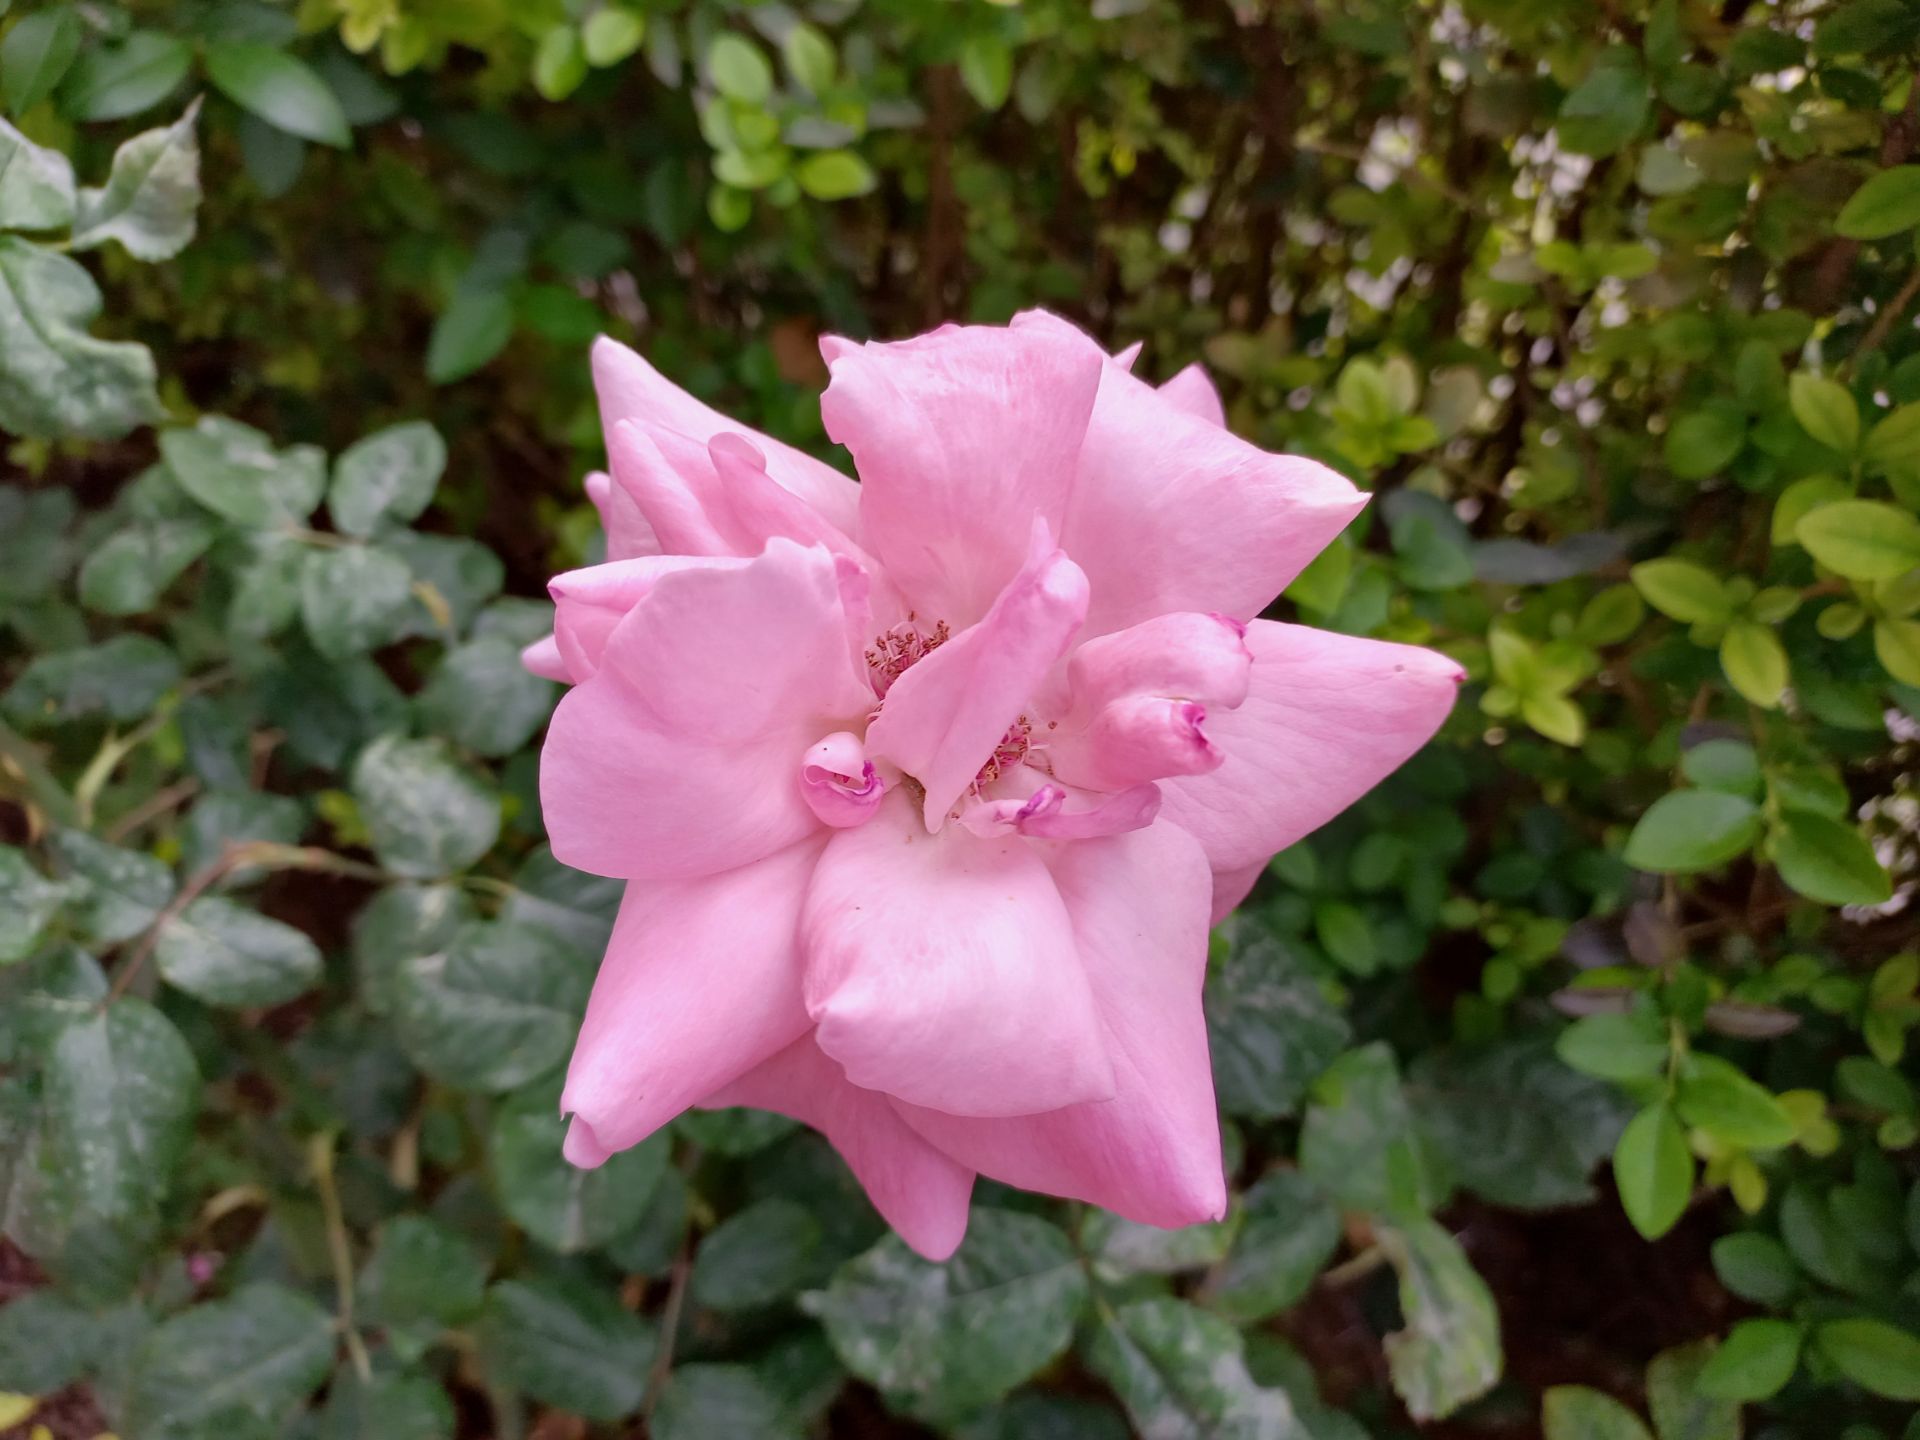 نمونه عکس ثبت شده توسط دوربین اصلی گلکسی A32 در روشنایی روز - تصویر یک گل